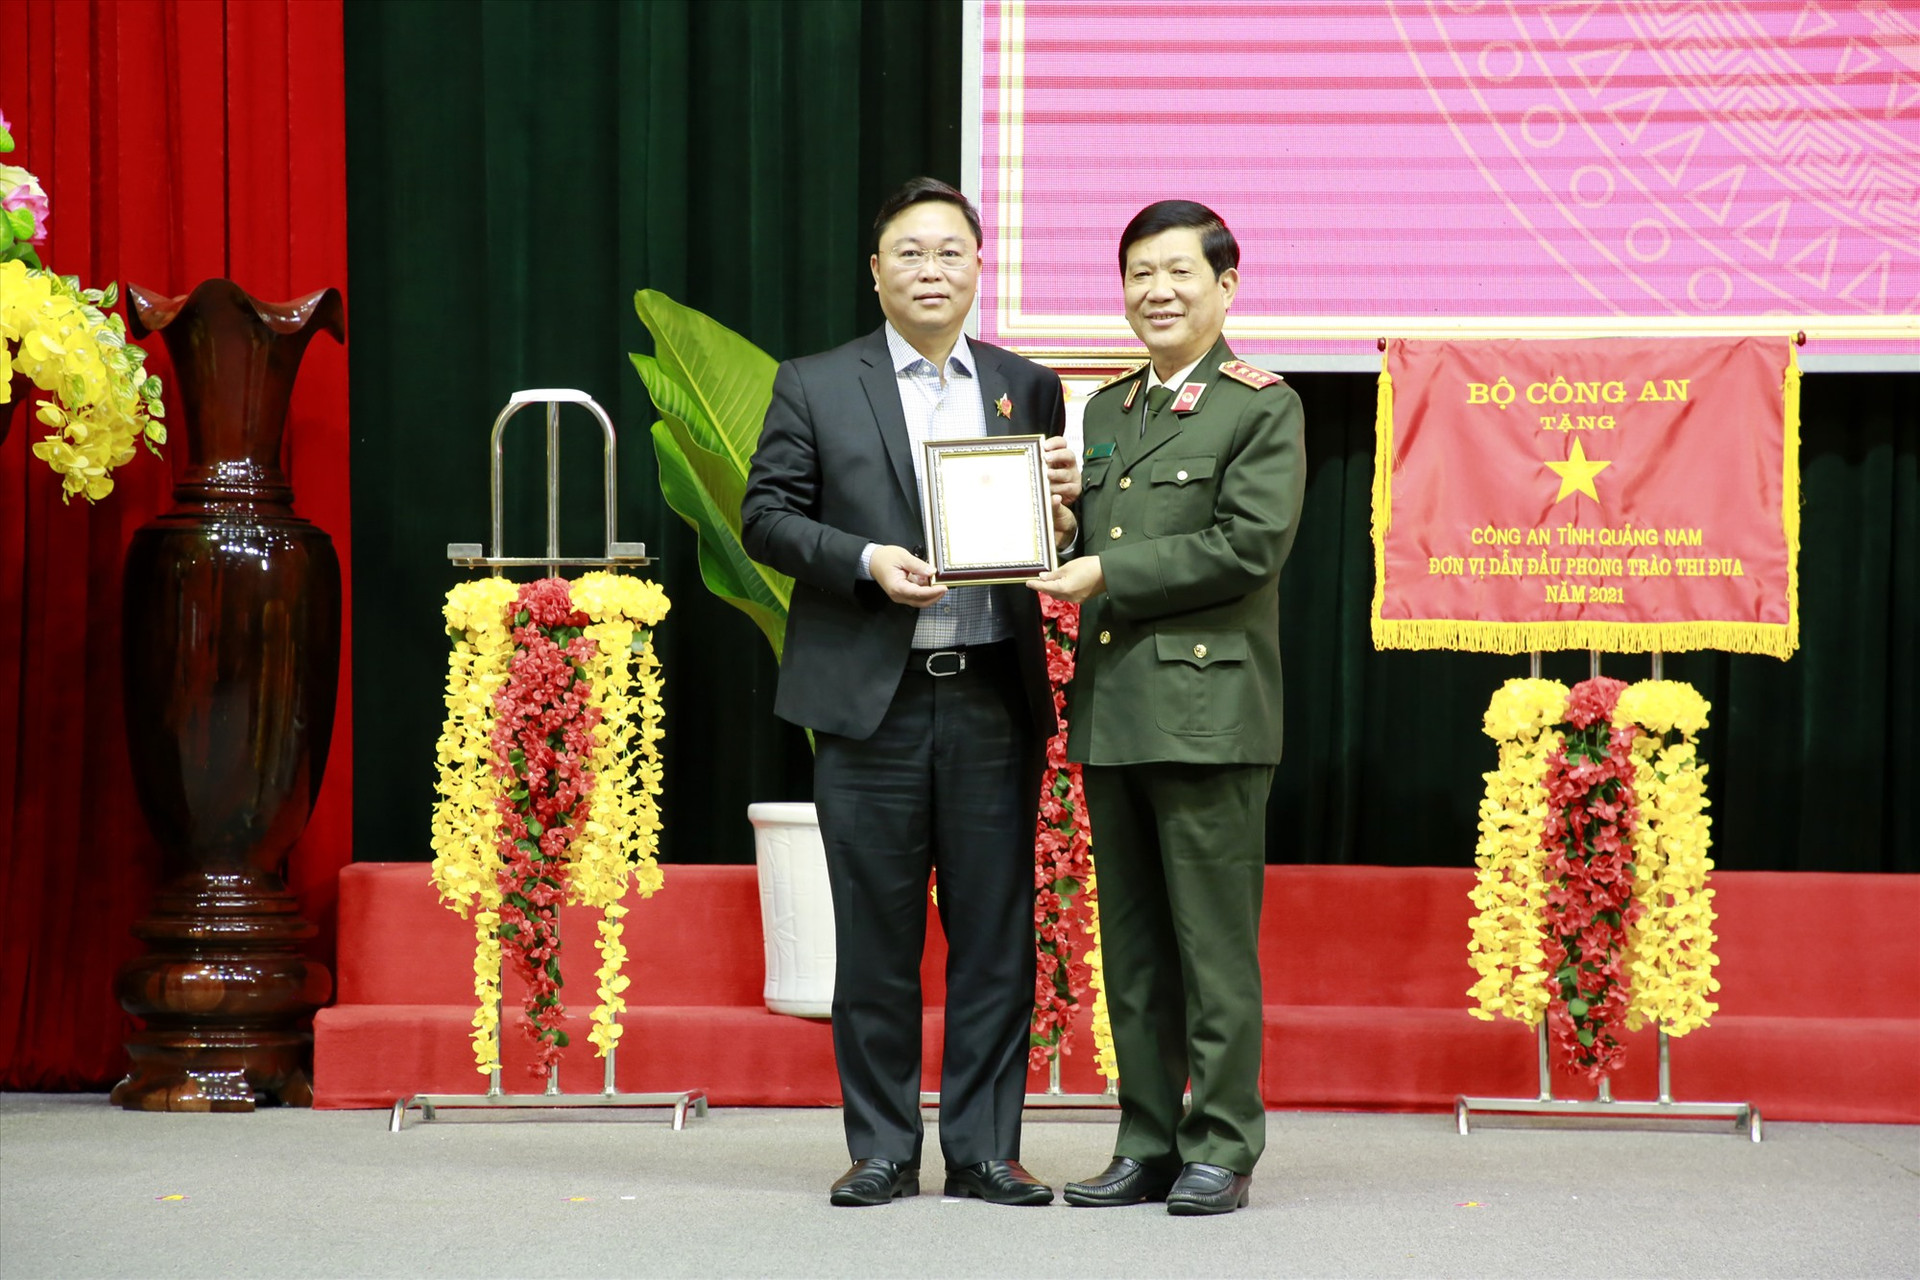 Chủ tịch UBND tỉnh Lê Trí Thanh được Bộ Công an tặng kỷ niệm chương ” Vì sự nghiệp xây dựng cơ sở dữ liệu quốc gia về dân cư“. Ảnh: T.C